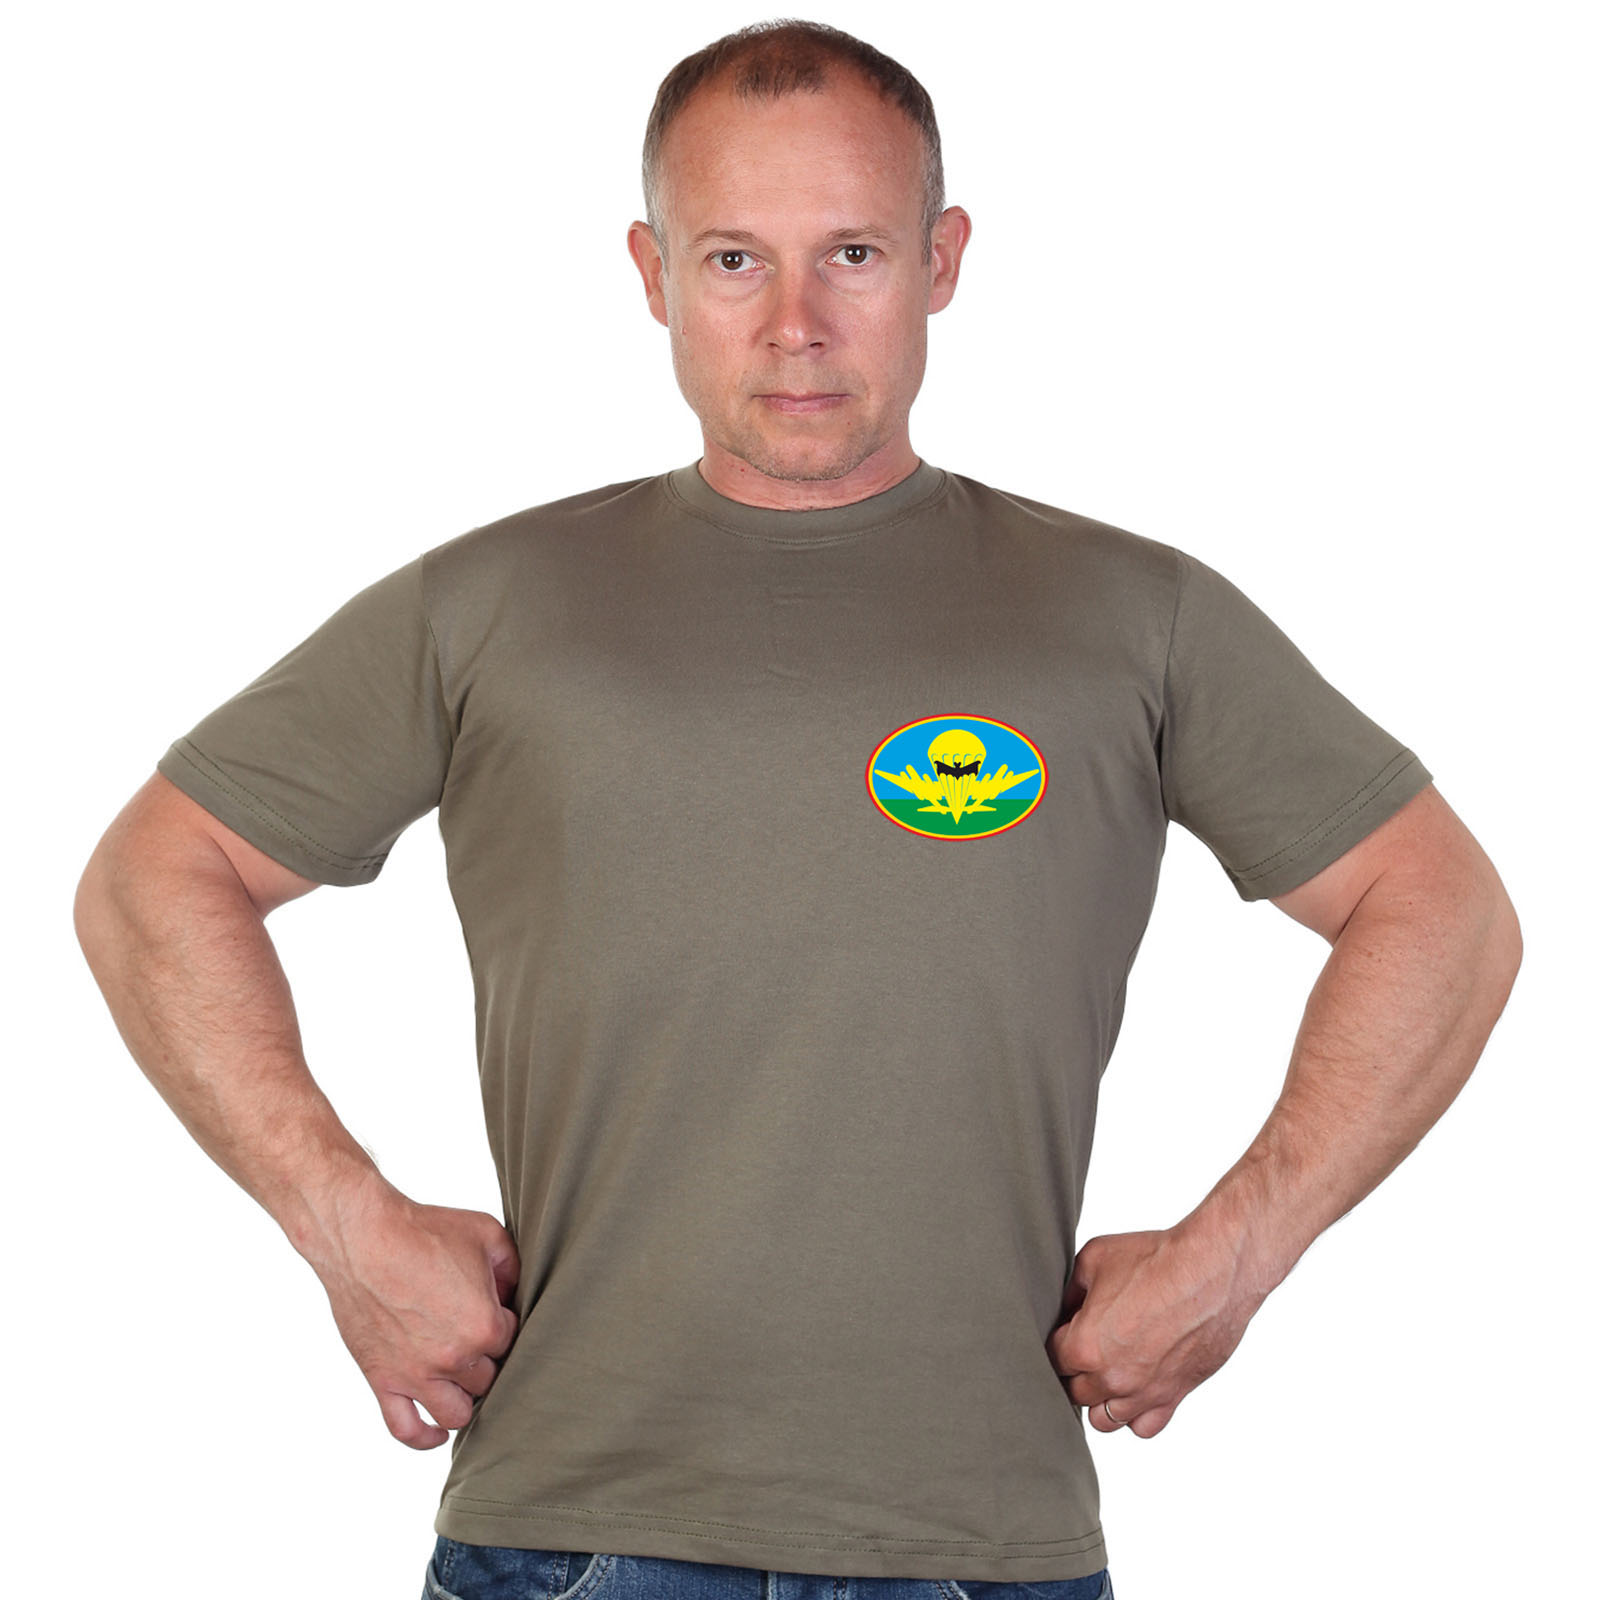 Оливковая футболка с термотрансфером-эмблемой разведки ВДВ 